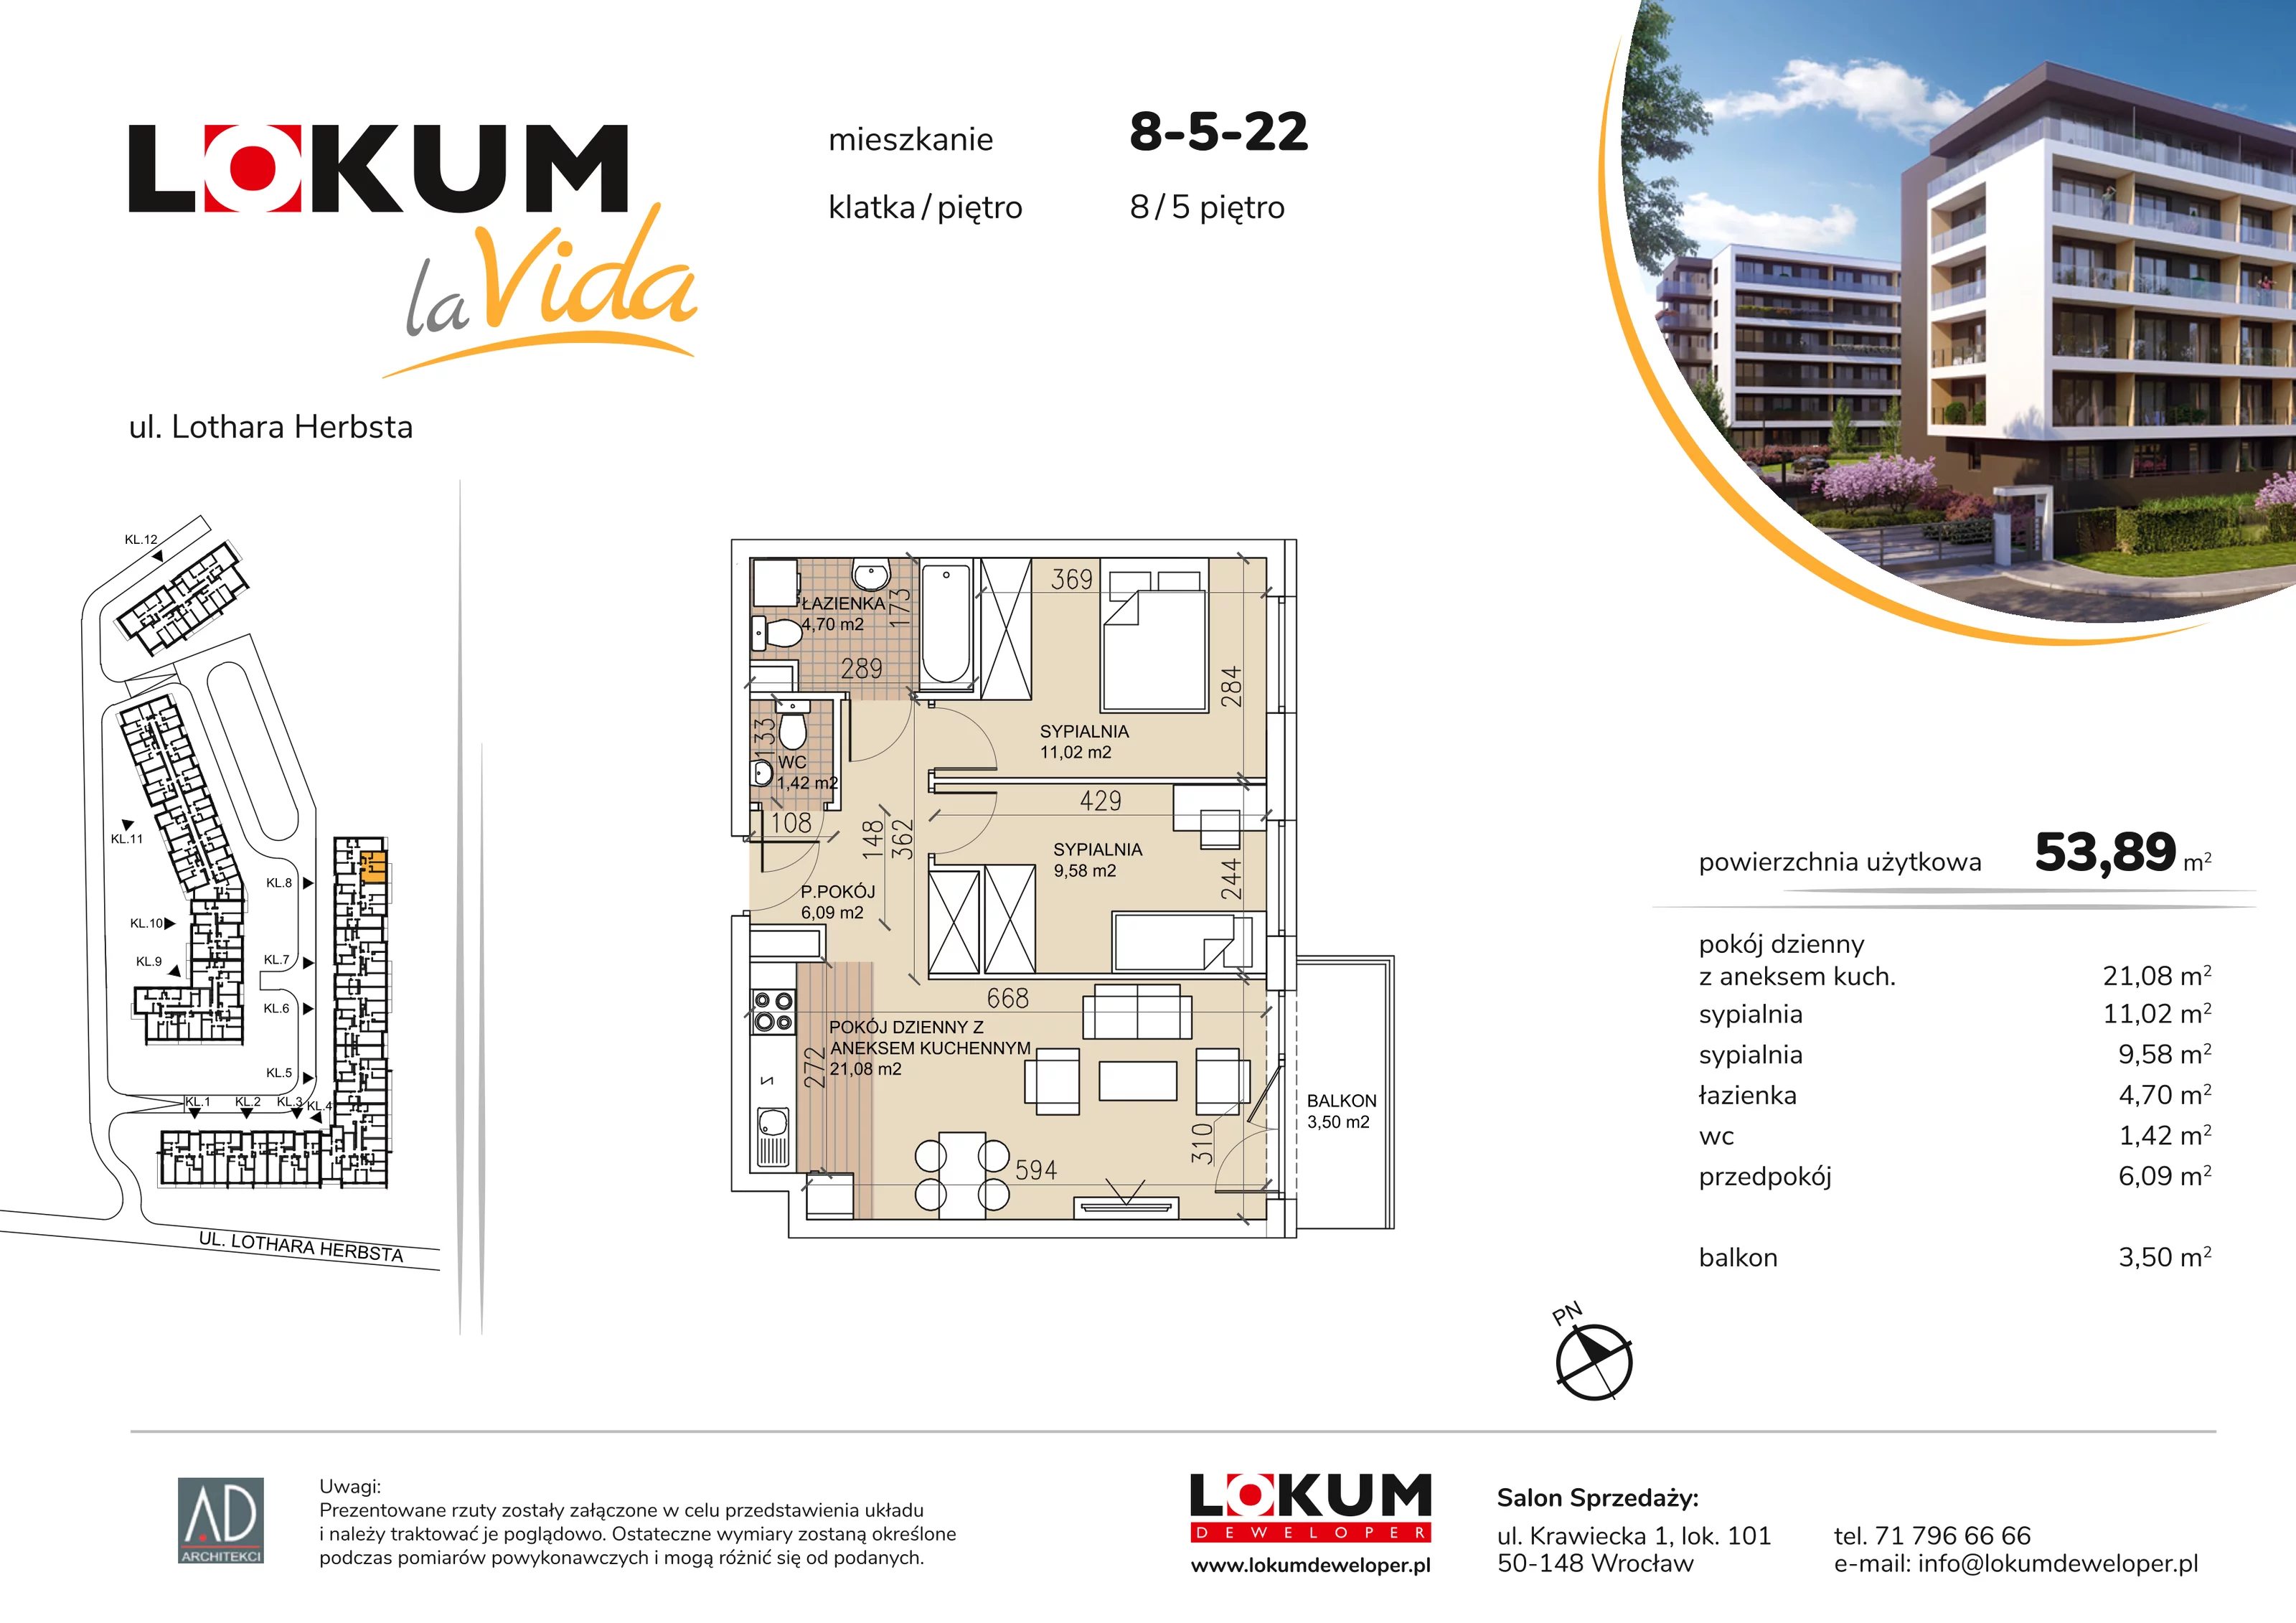 Mieszkanie 53,89 m², piętro 5, oferta nr 8-5-22, Lokum la Vida, Wrocław, Sołtysowice, ul. Lothara Herbsta